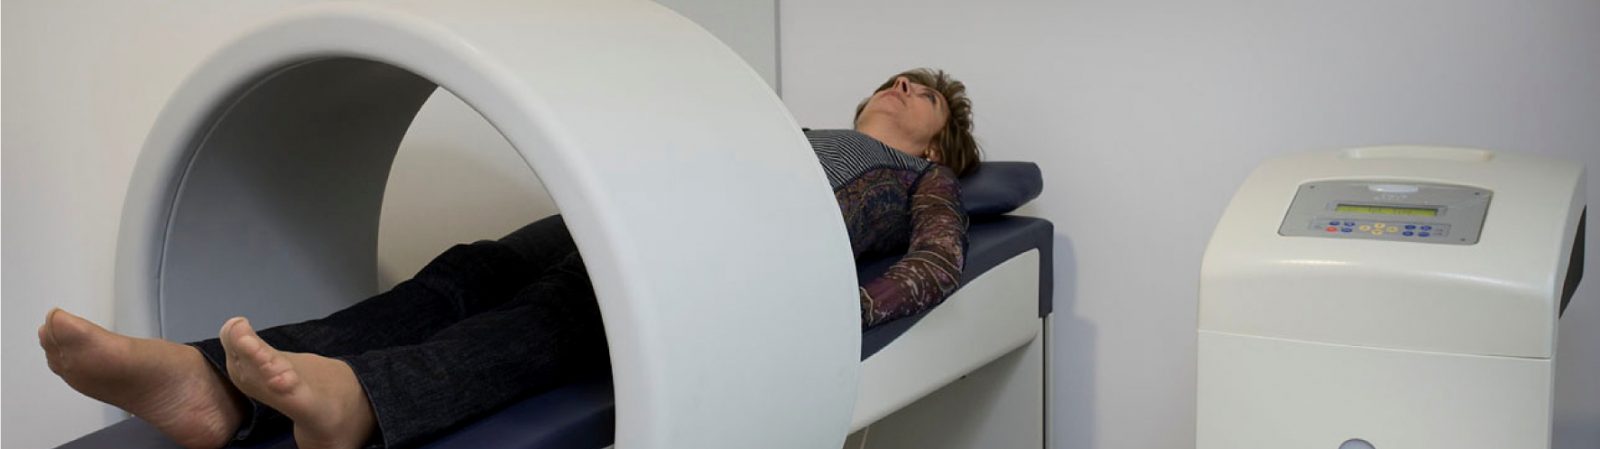 Prepararse para una Tomografía Axial Computarizada (TAC)